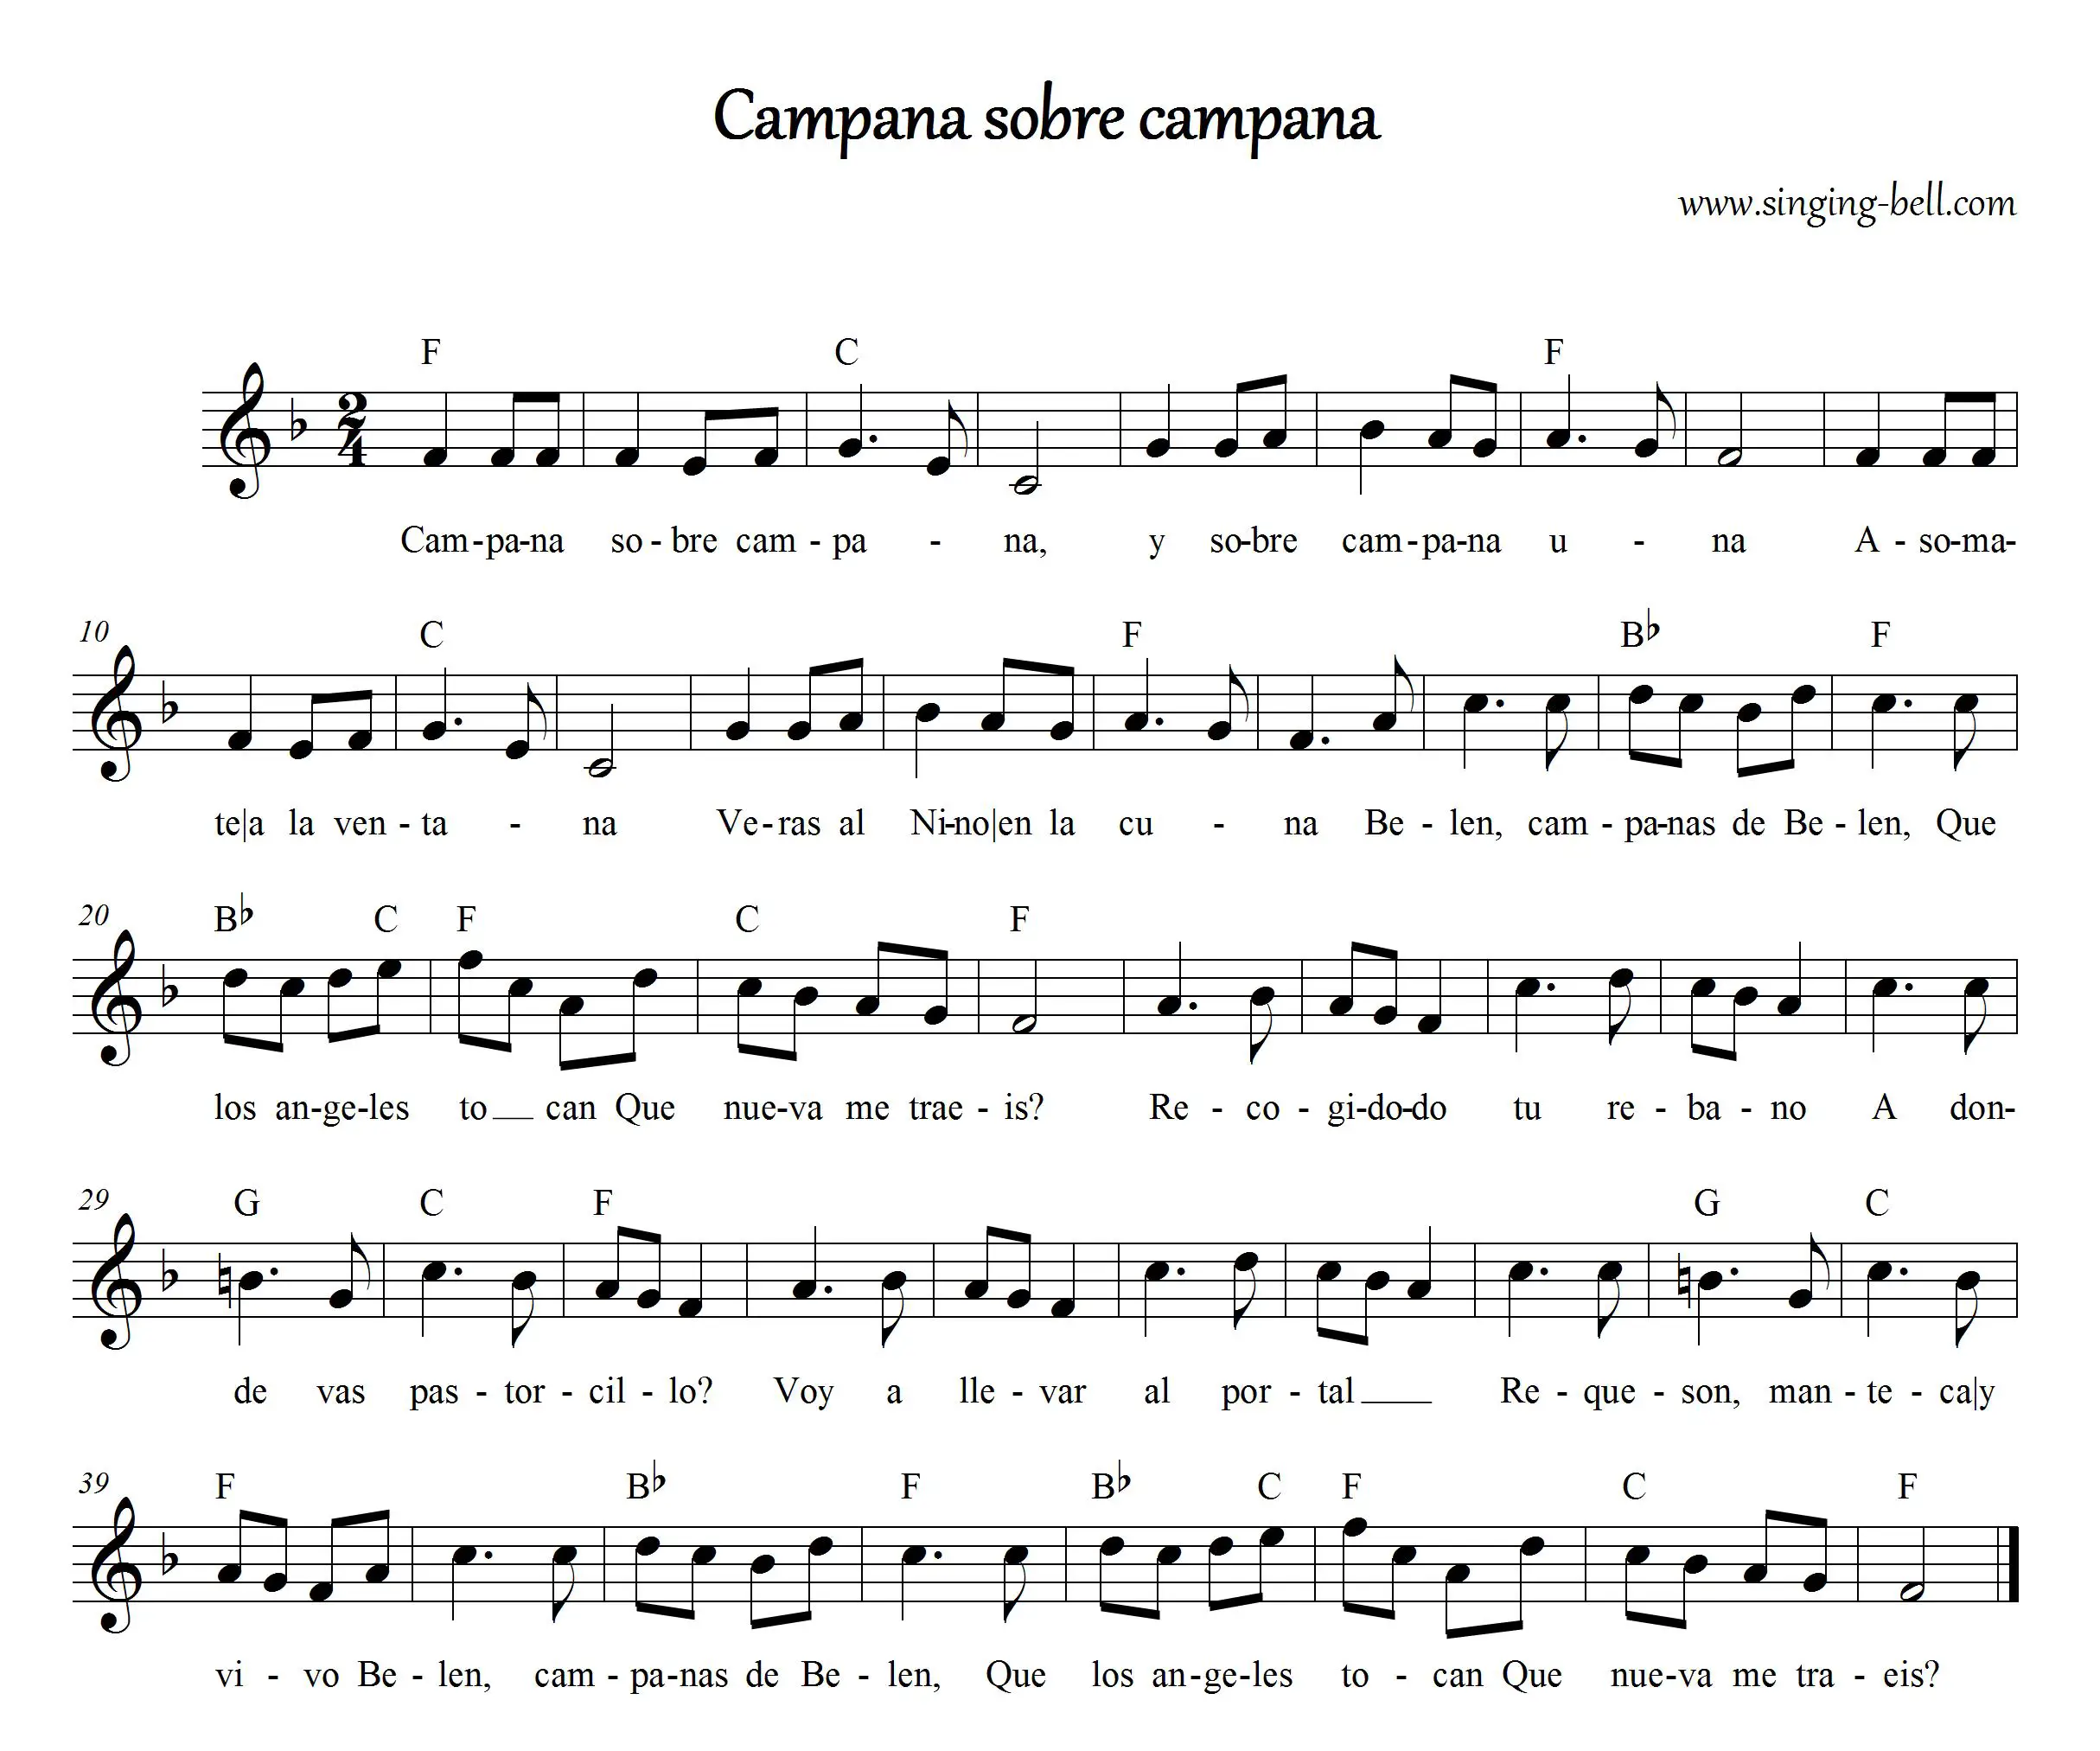 Campana Sobre Campana sheet music in F